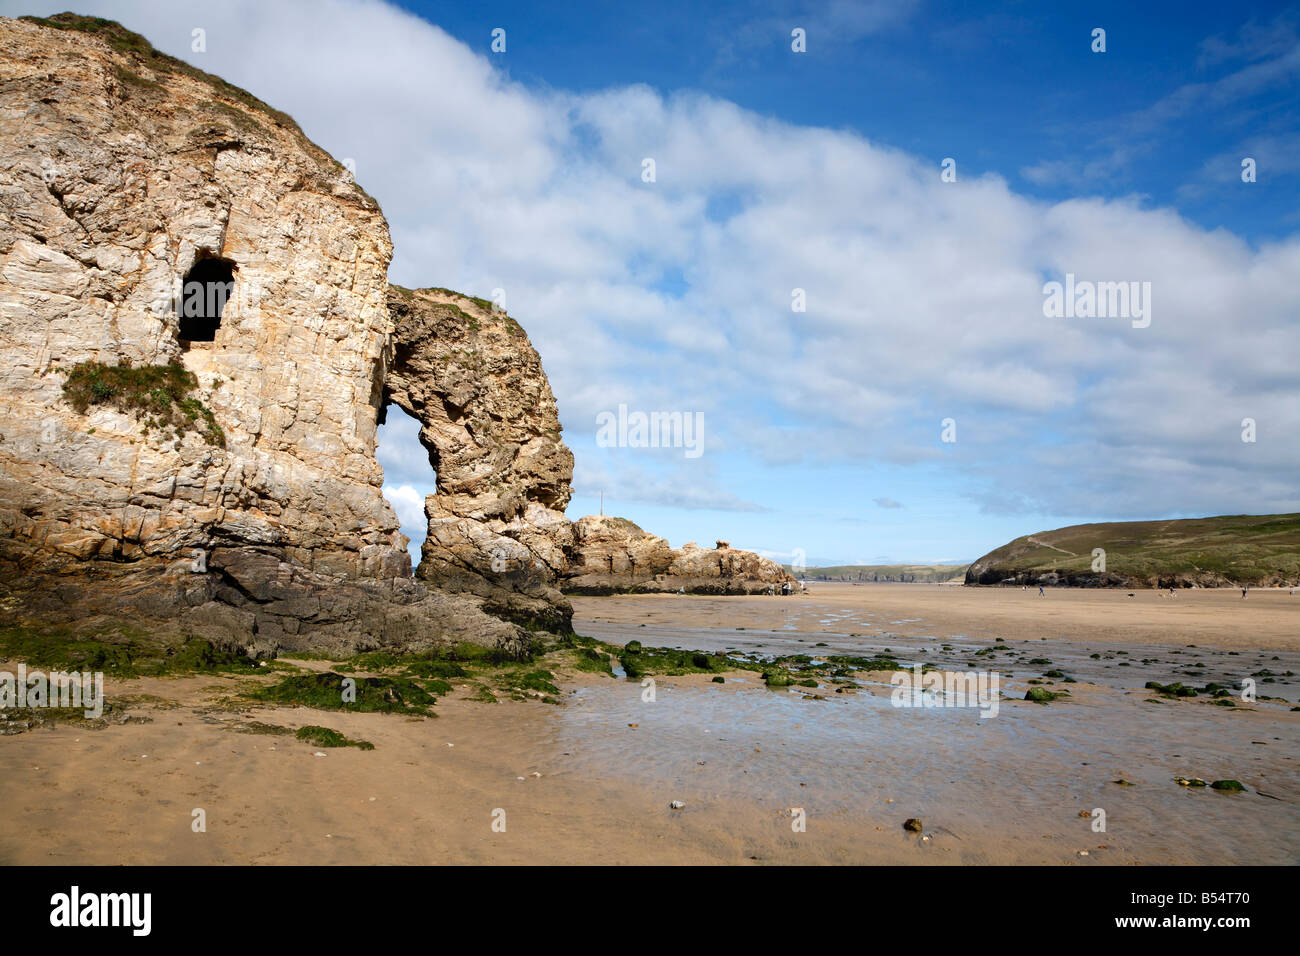 Arche de pierre naturelle et de grottes dans la fenêtre Rolvenden Cornwall UK. Banque D'Images